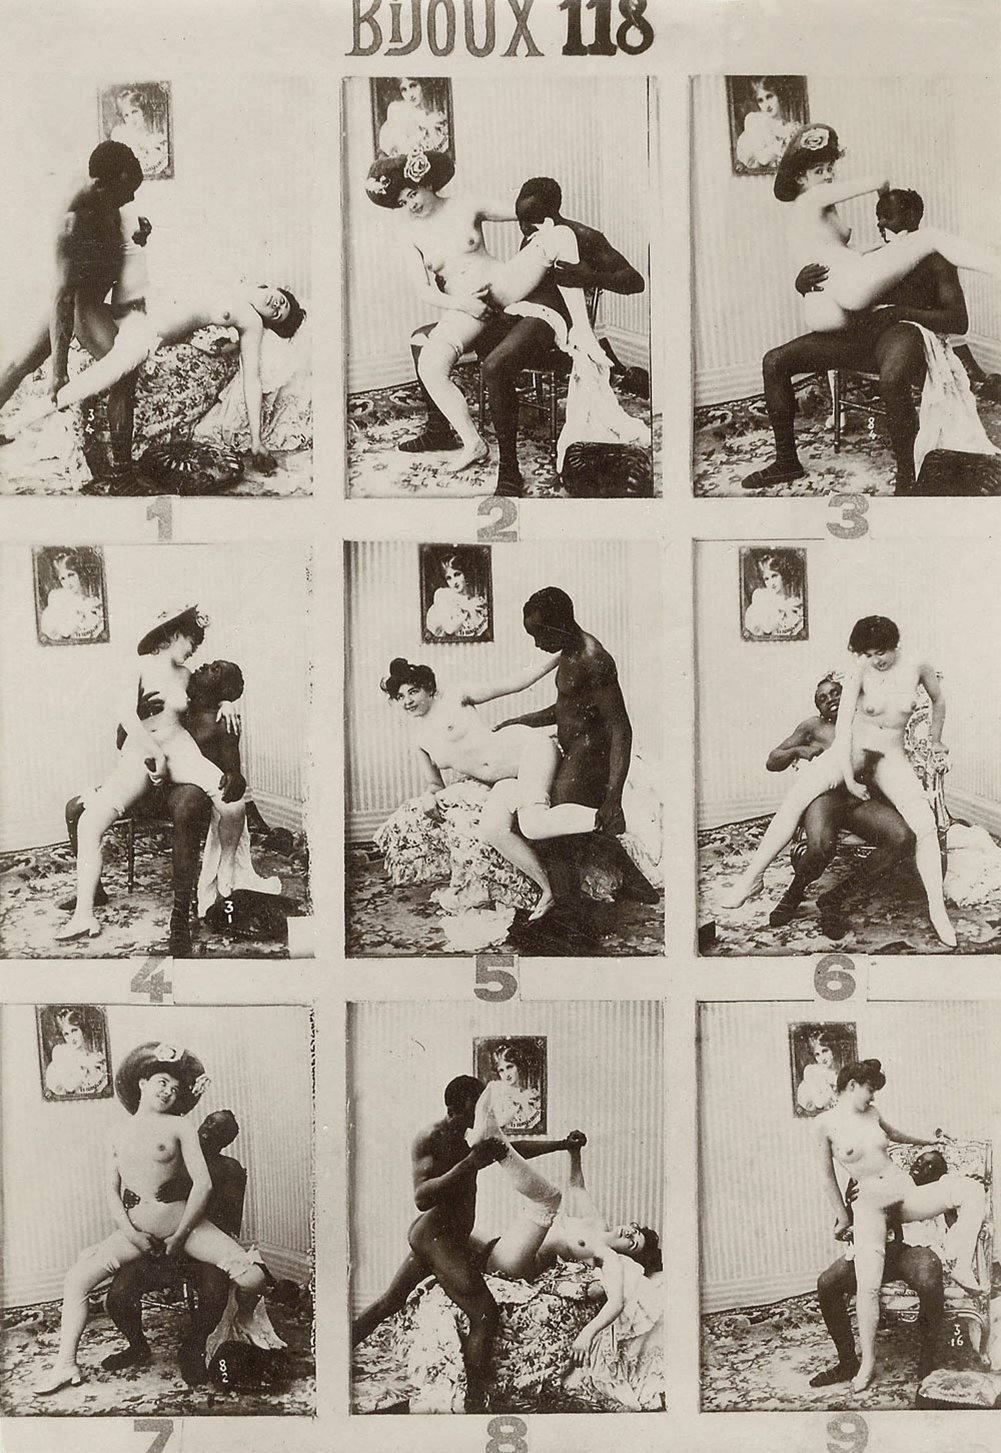 Vintage interracial collage of pics with sensual interracial encounters